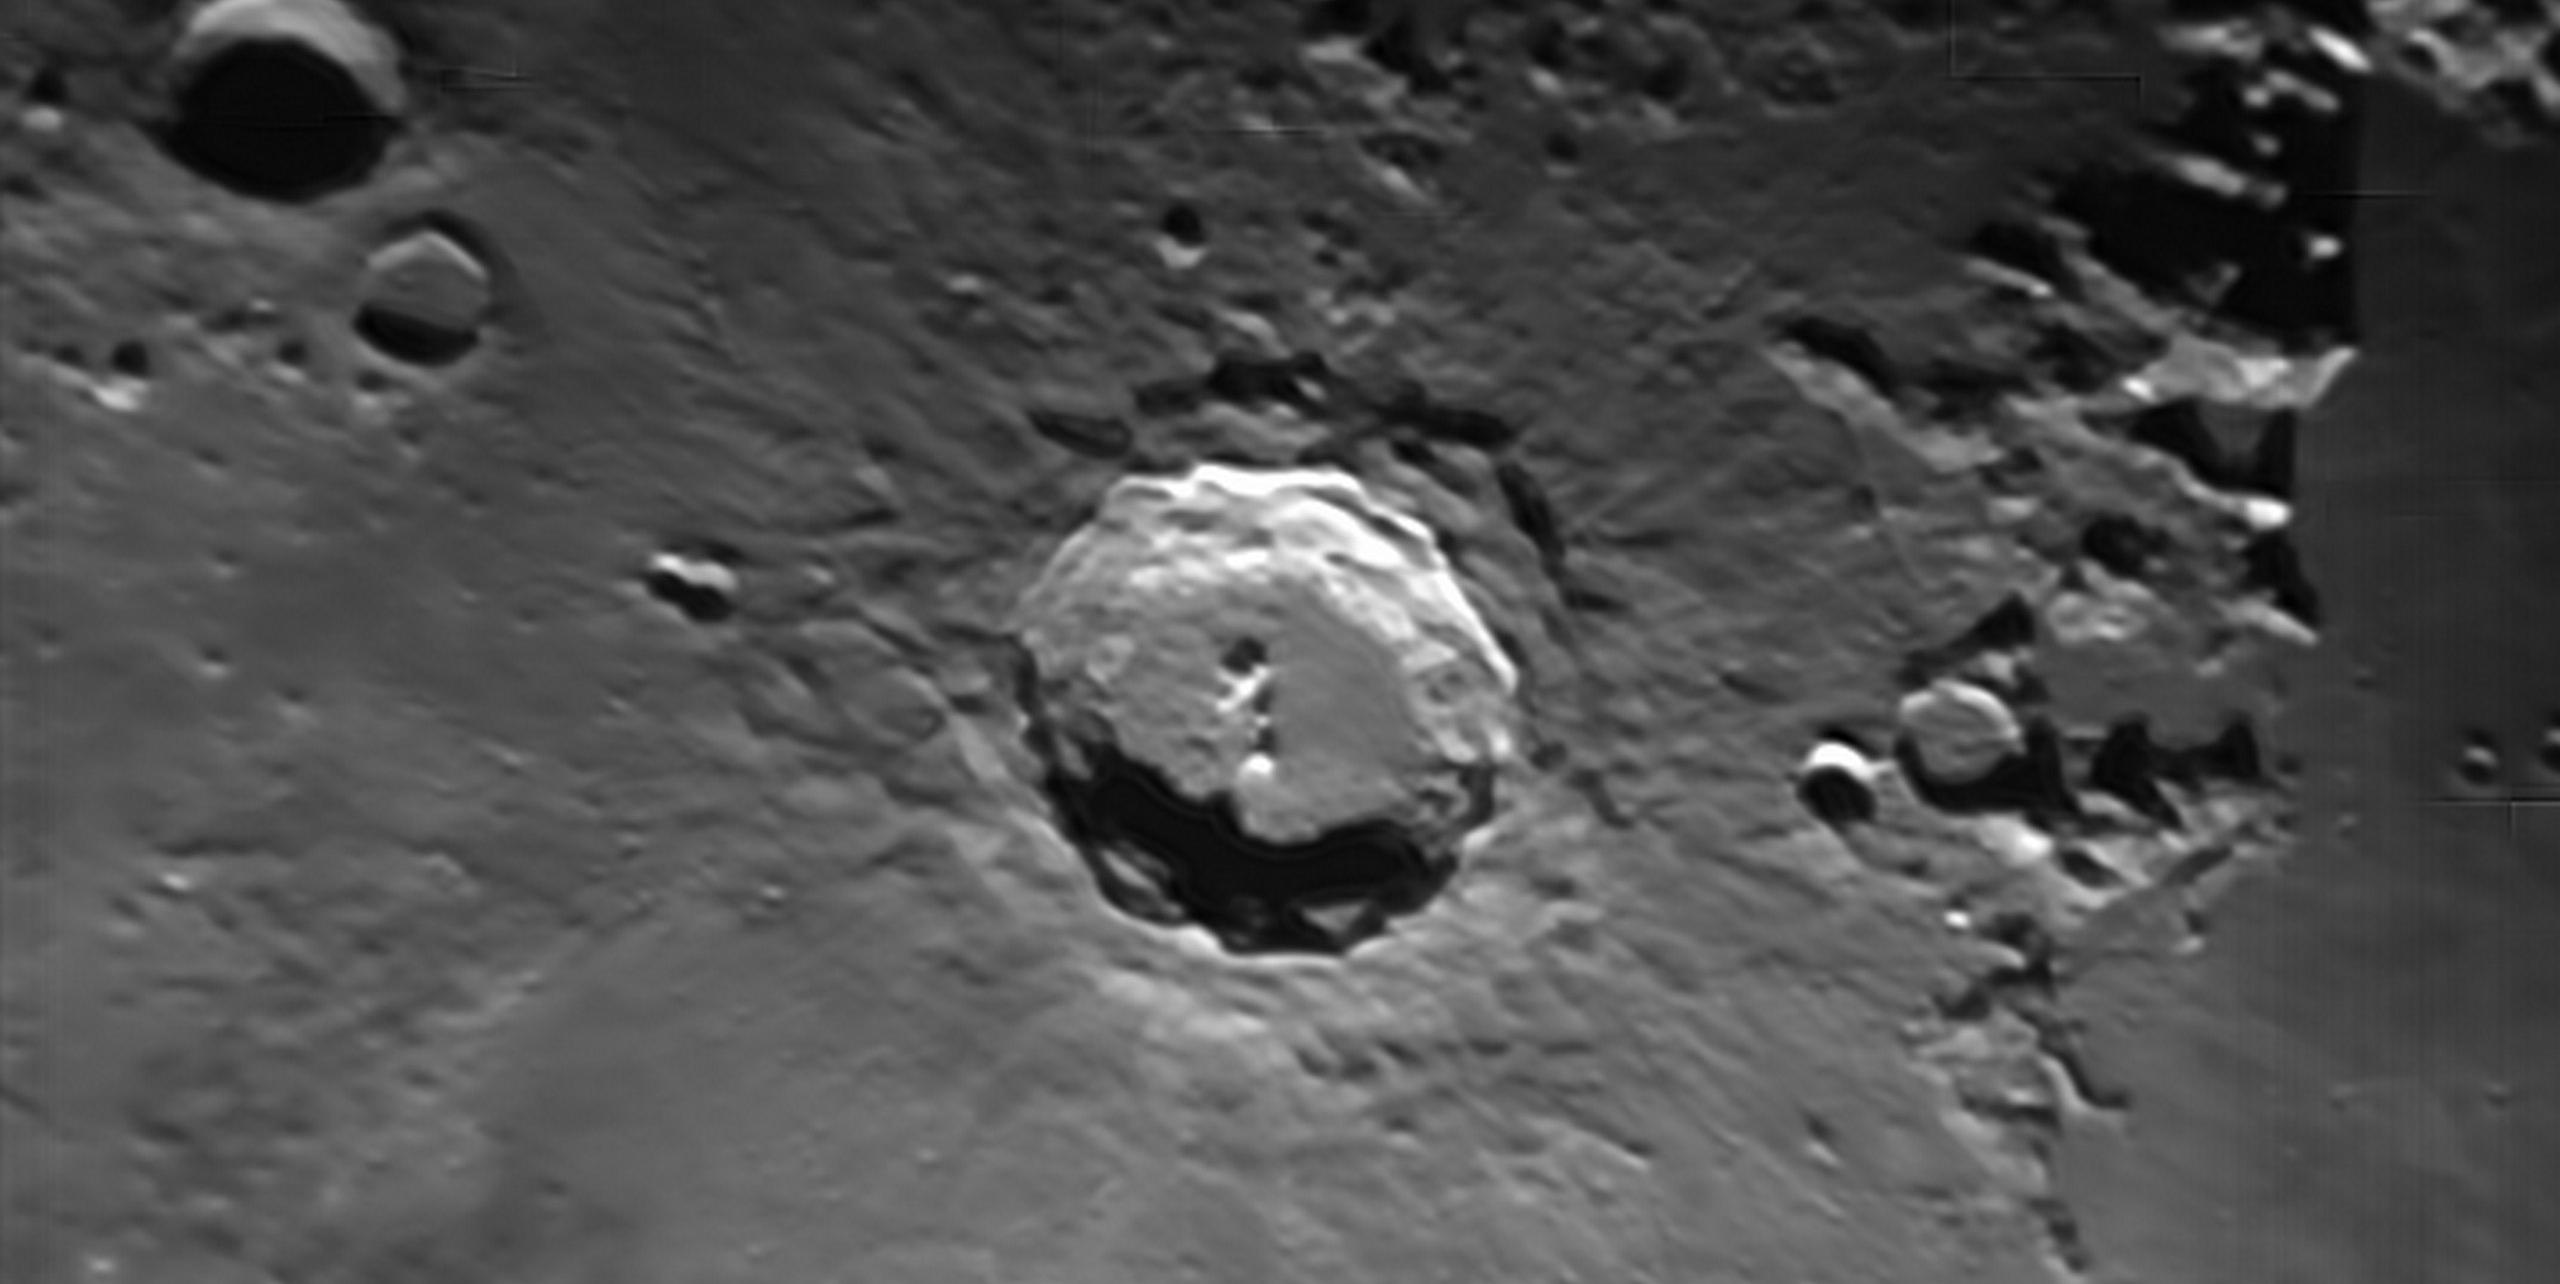 Курян приглашают посмотреть на Луну в телескоп